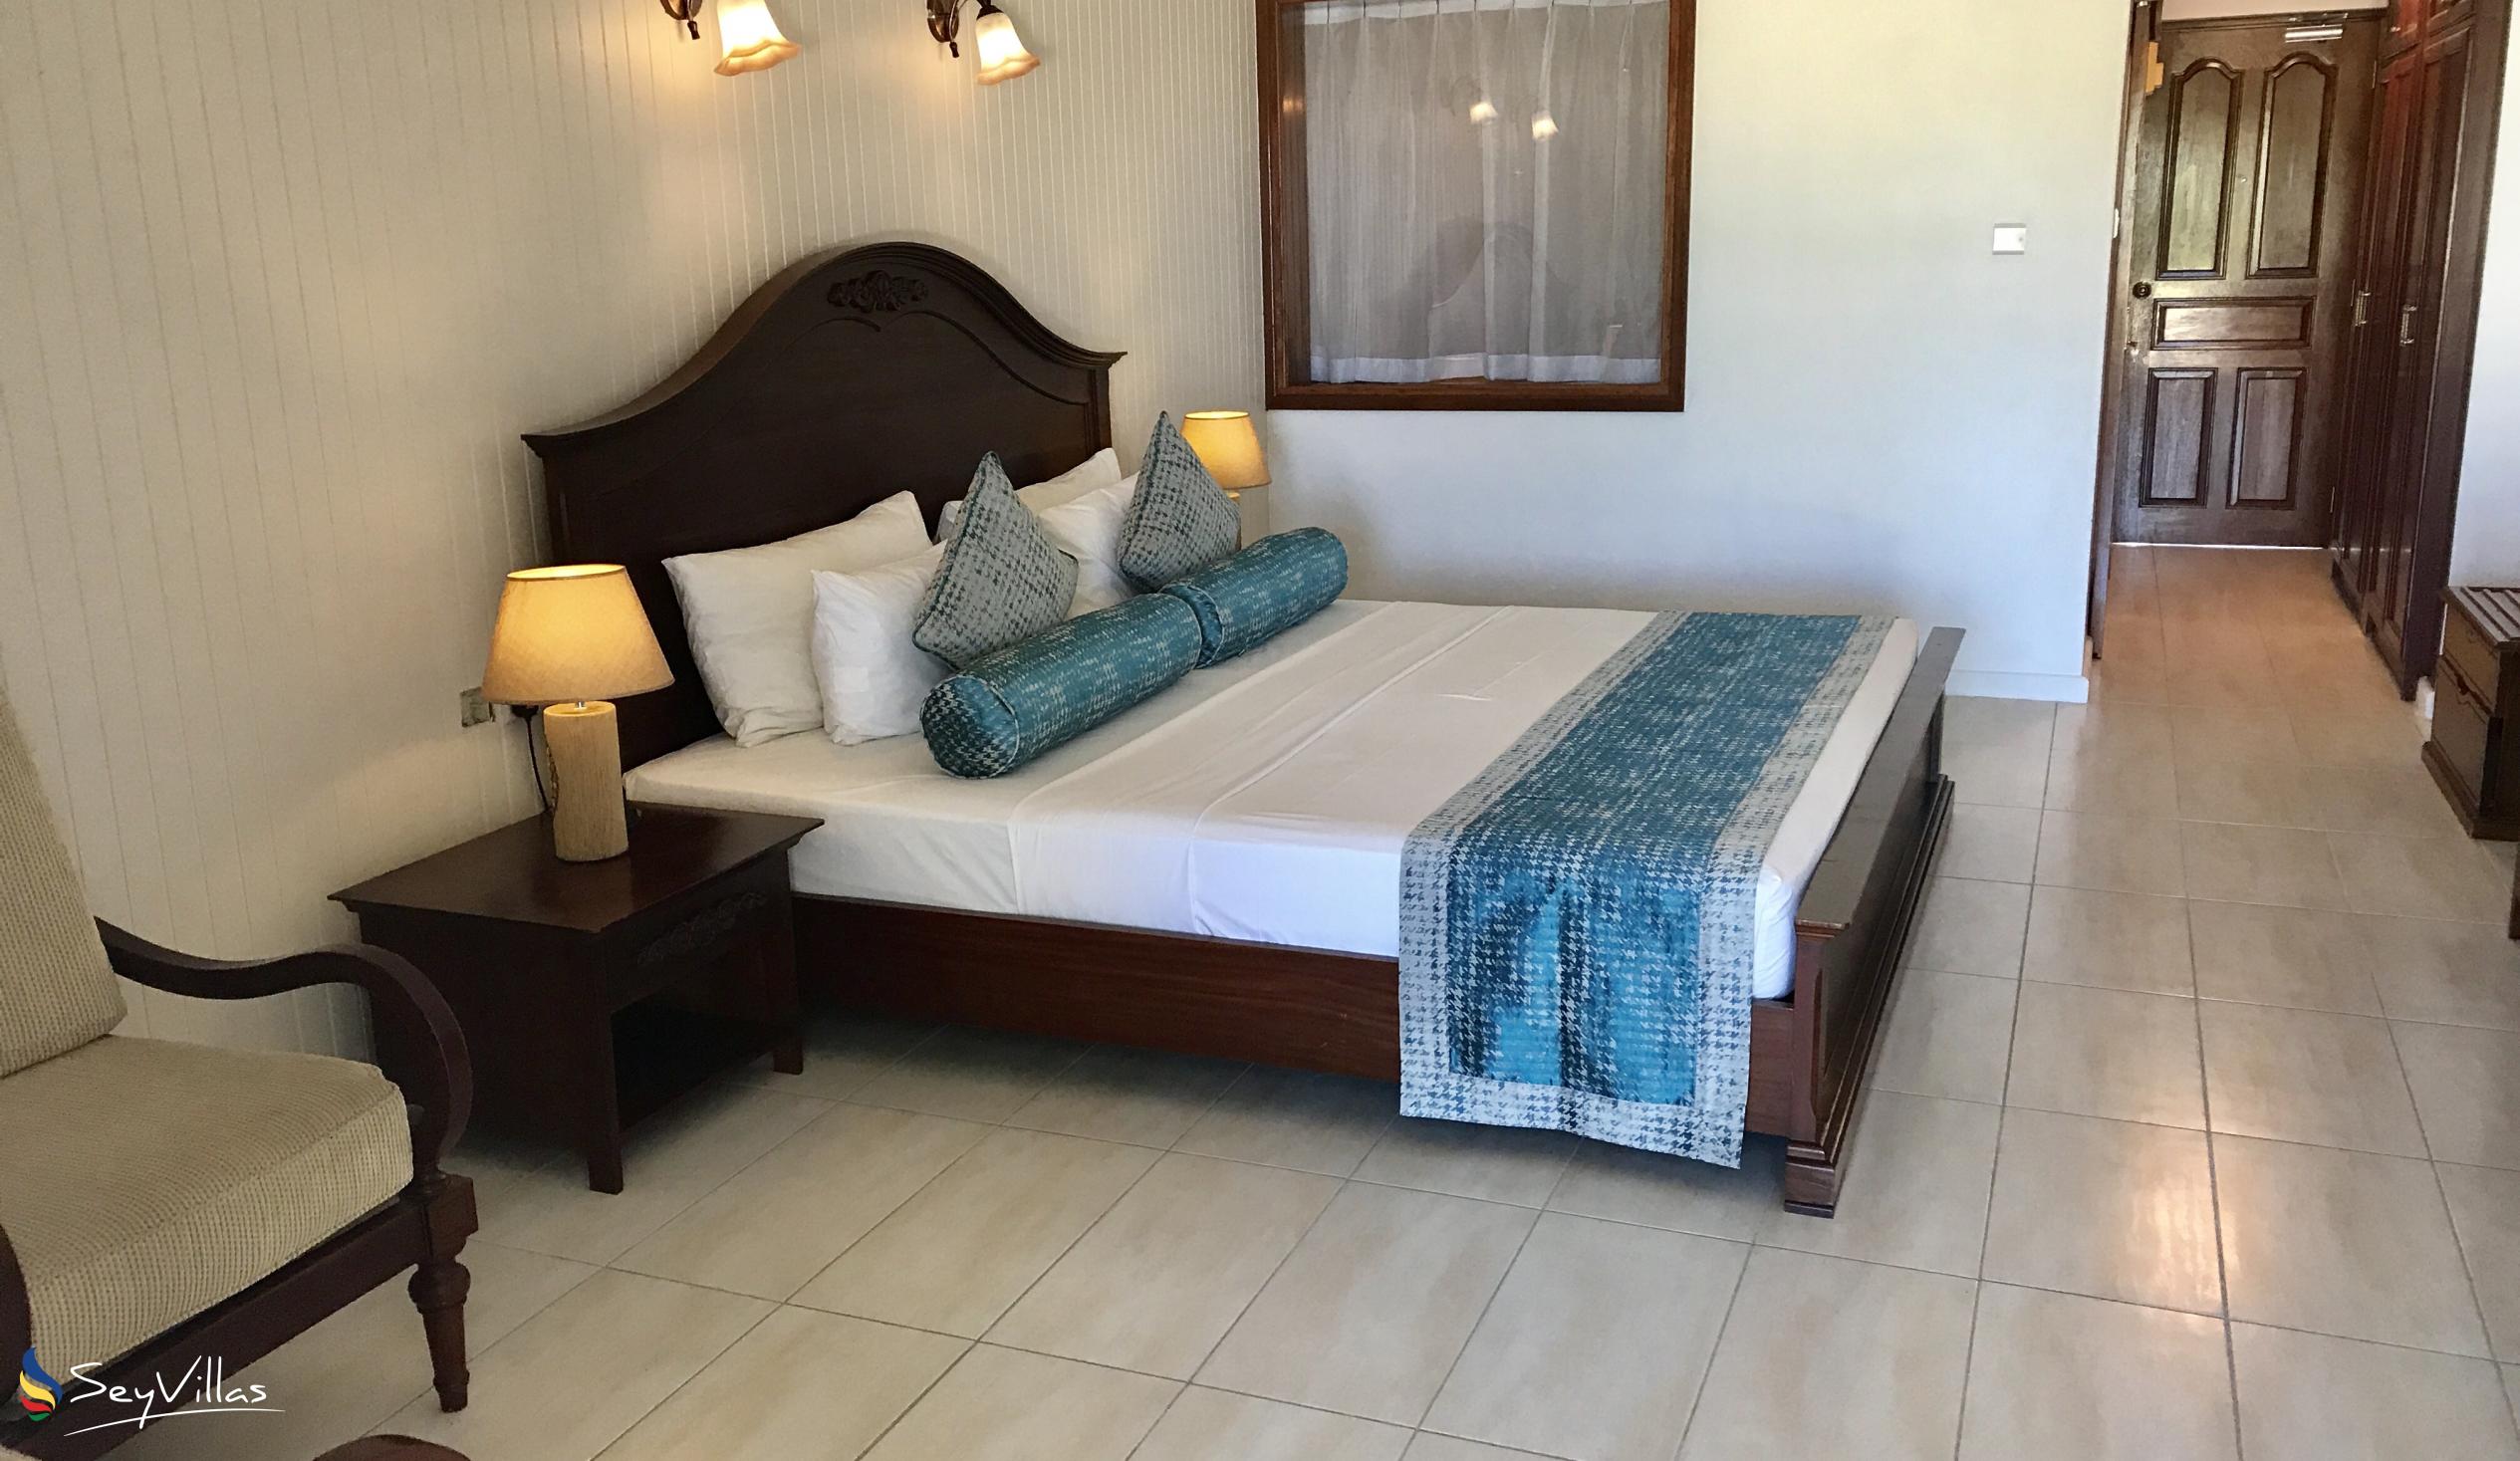 Photo 68: La Digue Island Lodge - 1-Bedroom Beach House Suite - La Digue (Seychelles)